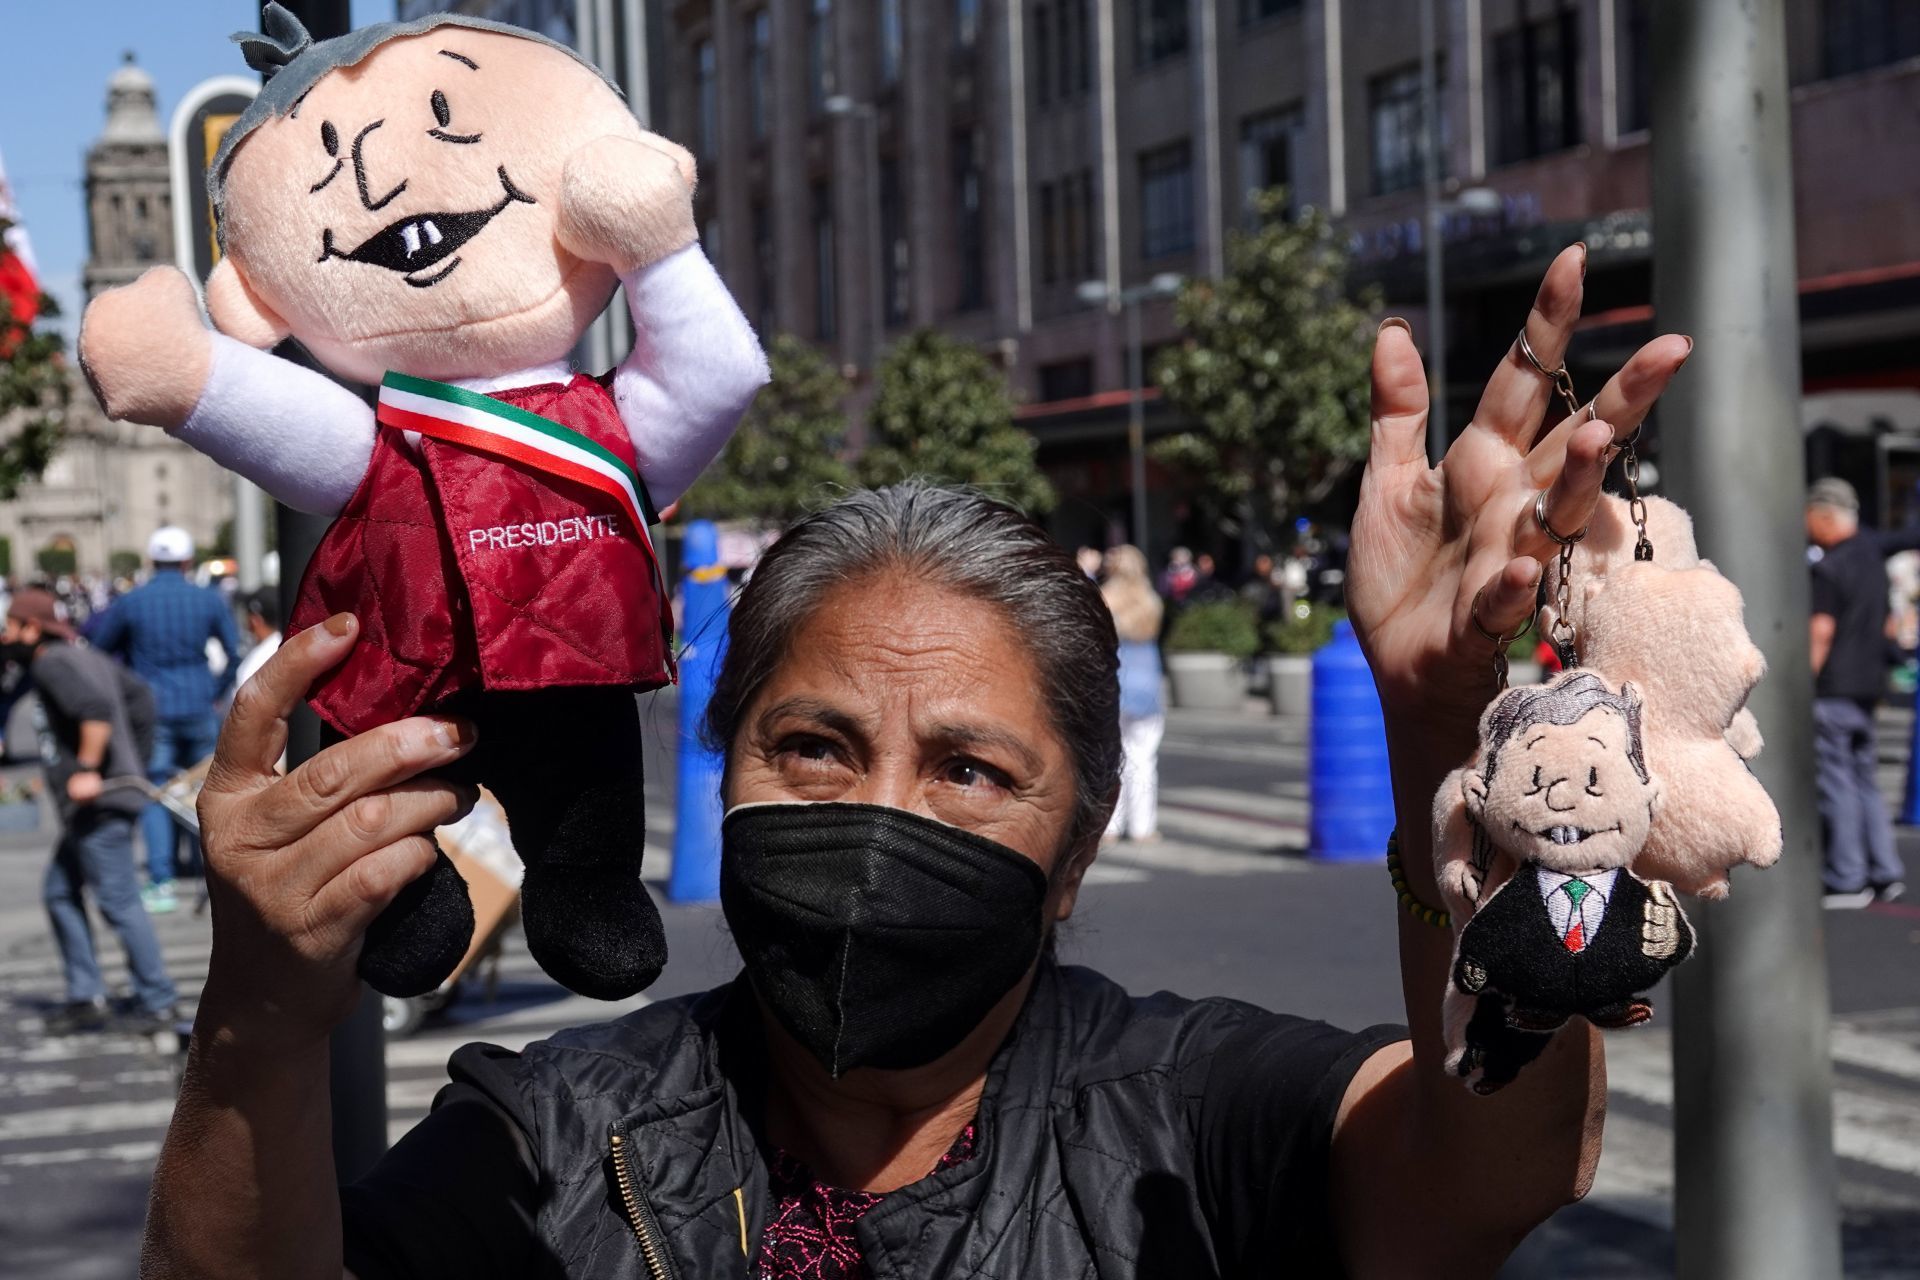 Los vendedores vendían los famosos 'Pejejitos', figuras de peluche del presidente